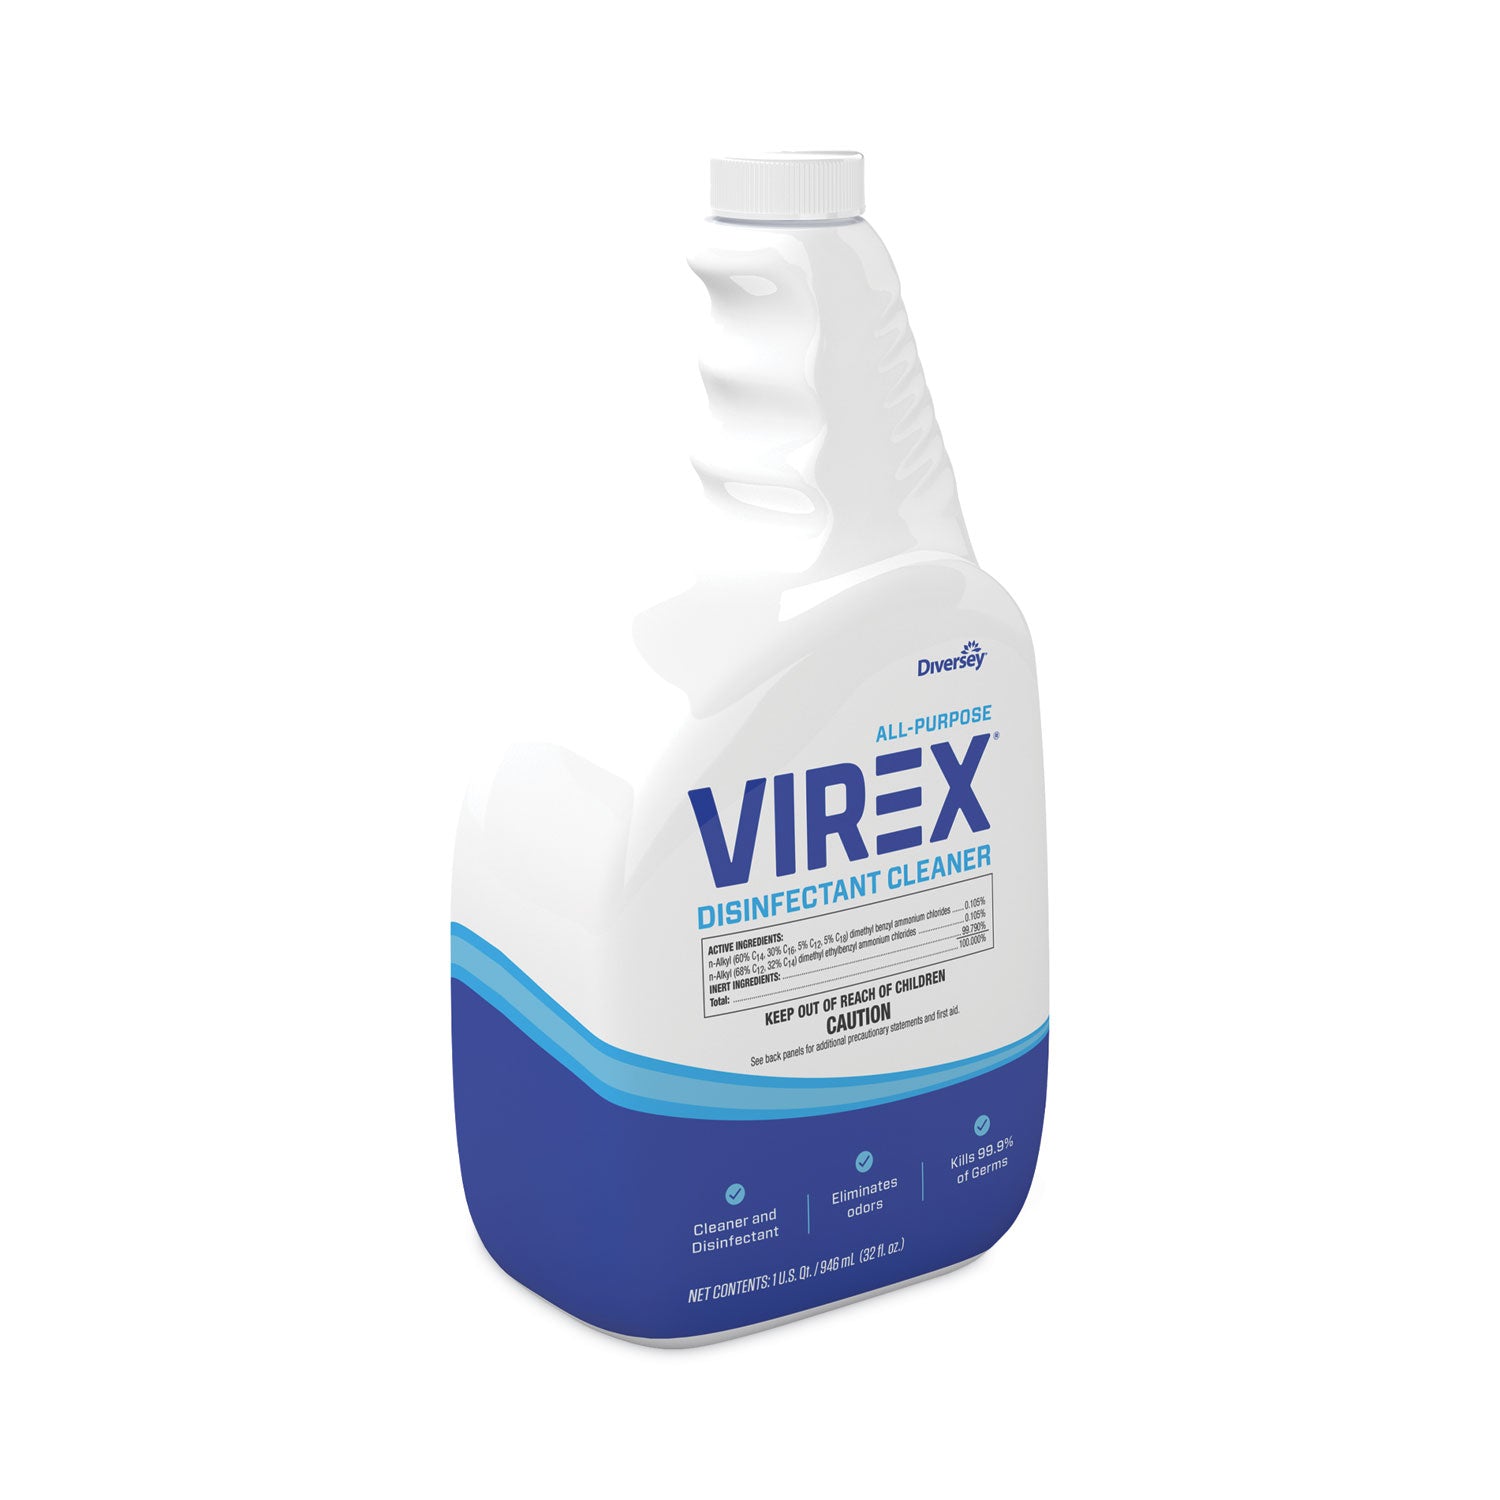 virex-all-purpose-disinfectant-cleaner-lemon-scent-32-oz-spray-bottle-4-carton_dvocbd540540 - 3